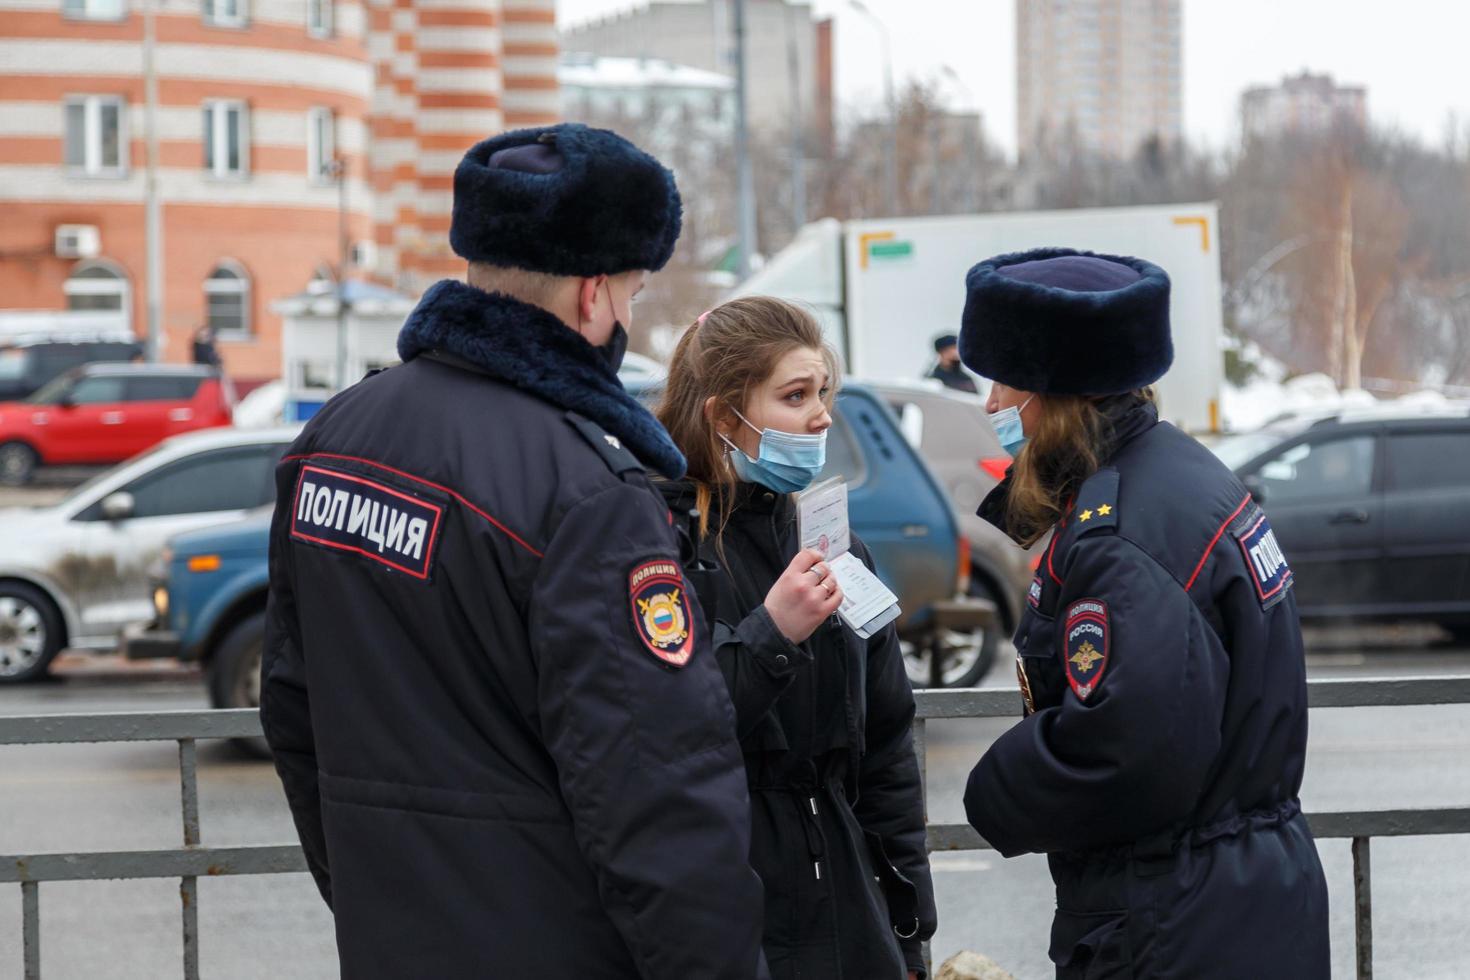 tula, russland 23. januar 2021 öffentliche massenversammlung zur unterstützung von alexei nawalny, minderjähriges mädchen streitet mit der polizei und hält pass. foto